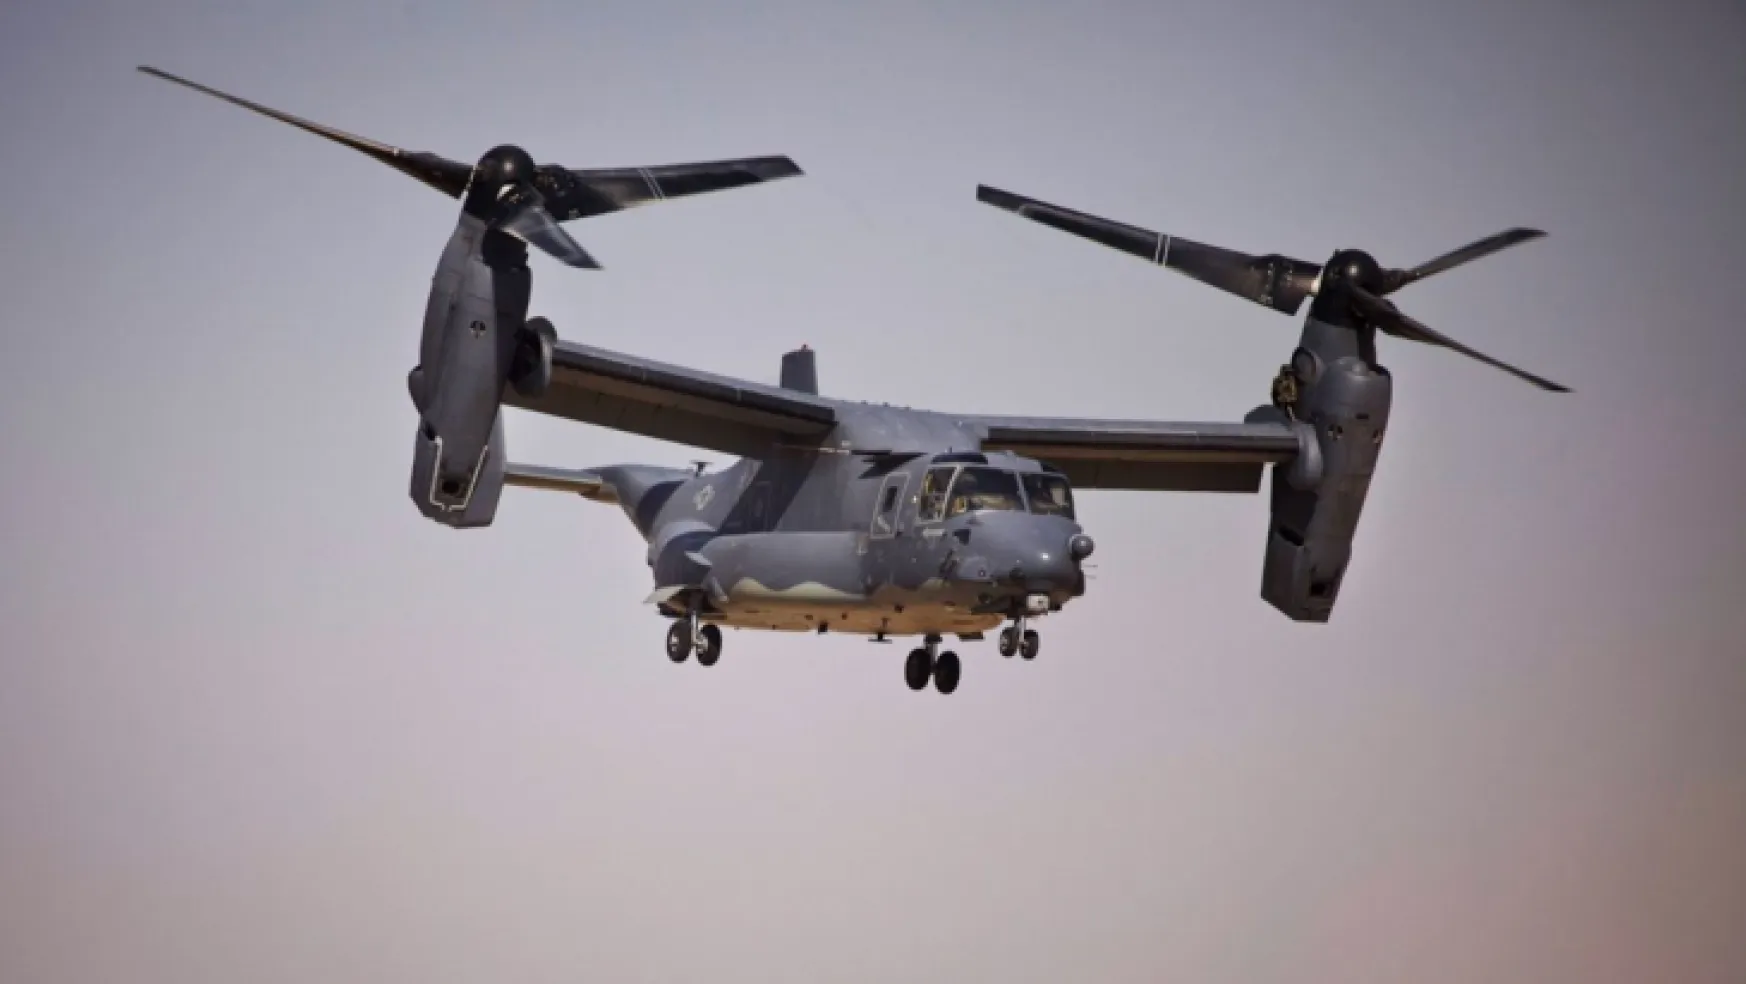 Avustralya'da 23 ABD askerini taşıyan helikopter düştü: 3 ölü, 5 ağır yaralı